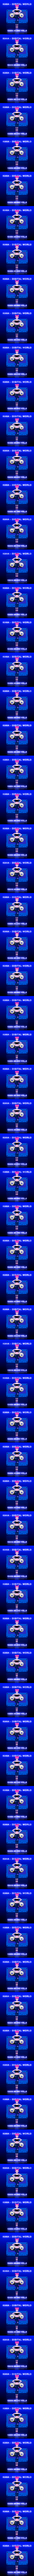 KANA MUSIC VOL.6